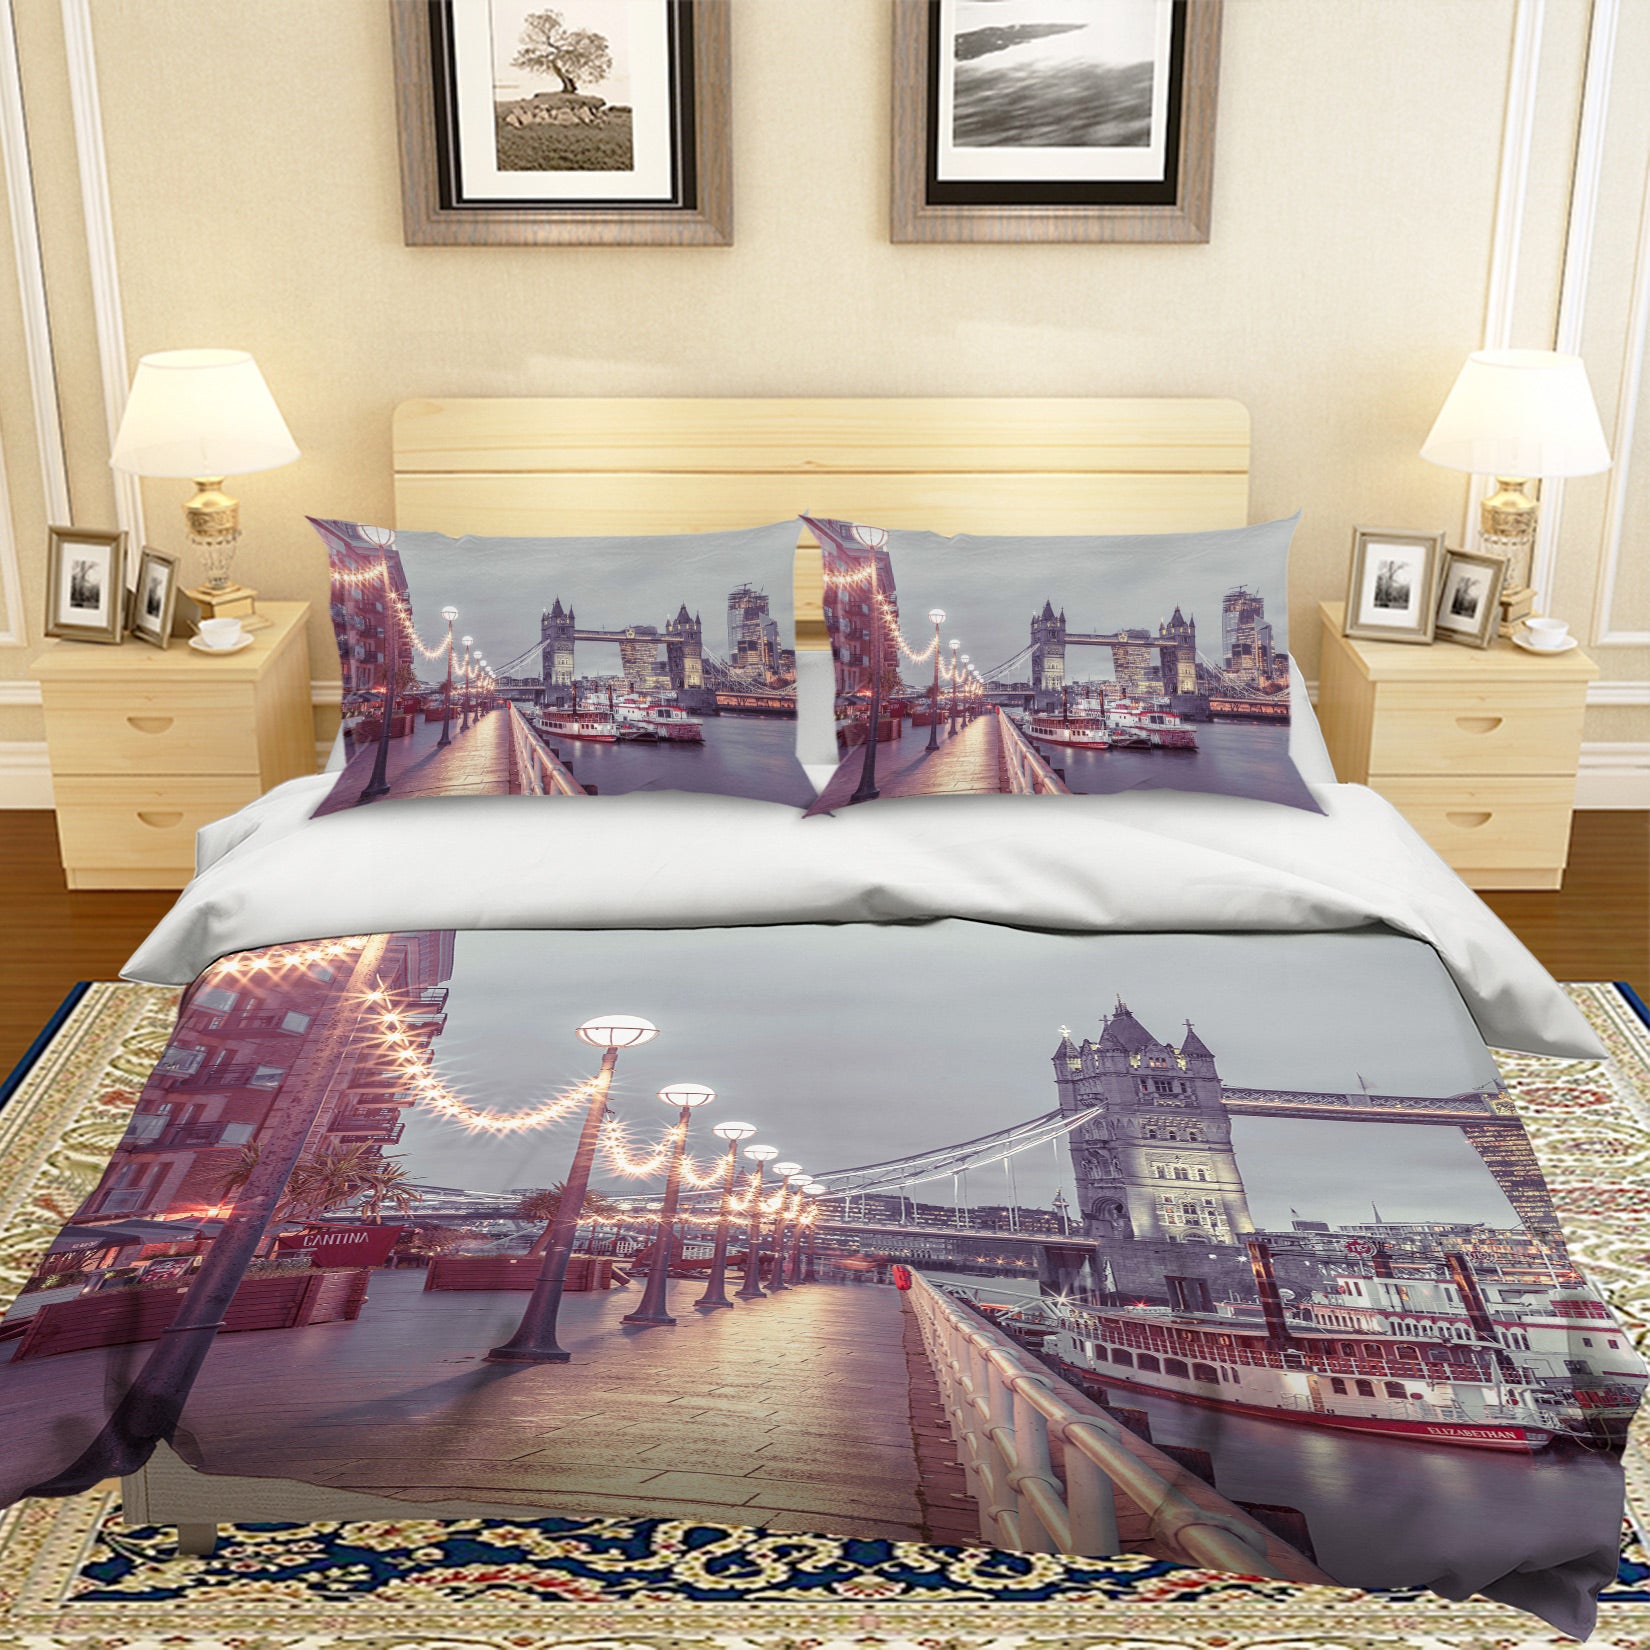 3D Yacht City 1054 Assaf Frank Bedding Bed Pillowcases Quilt